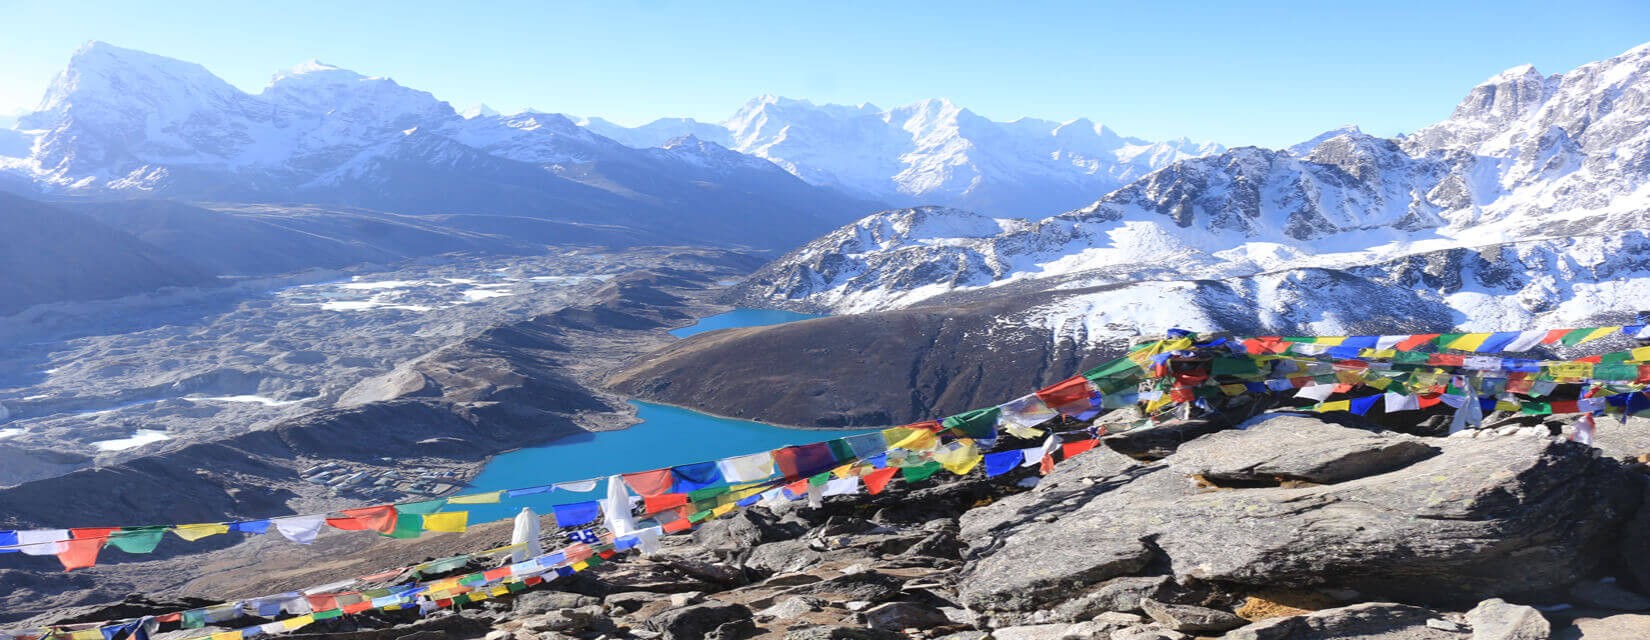 Best Trekking Packages in Nepal